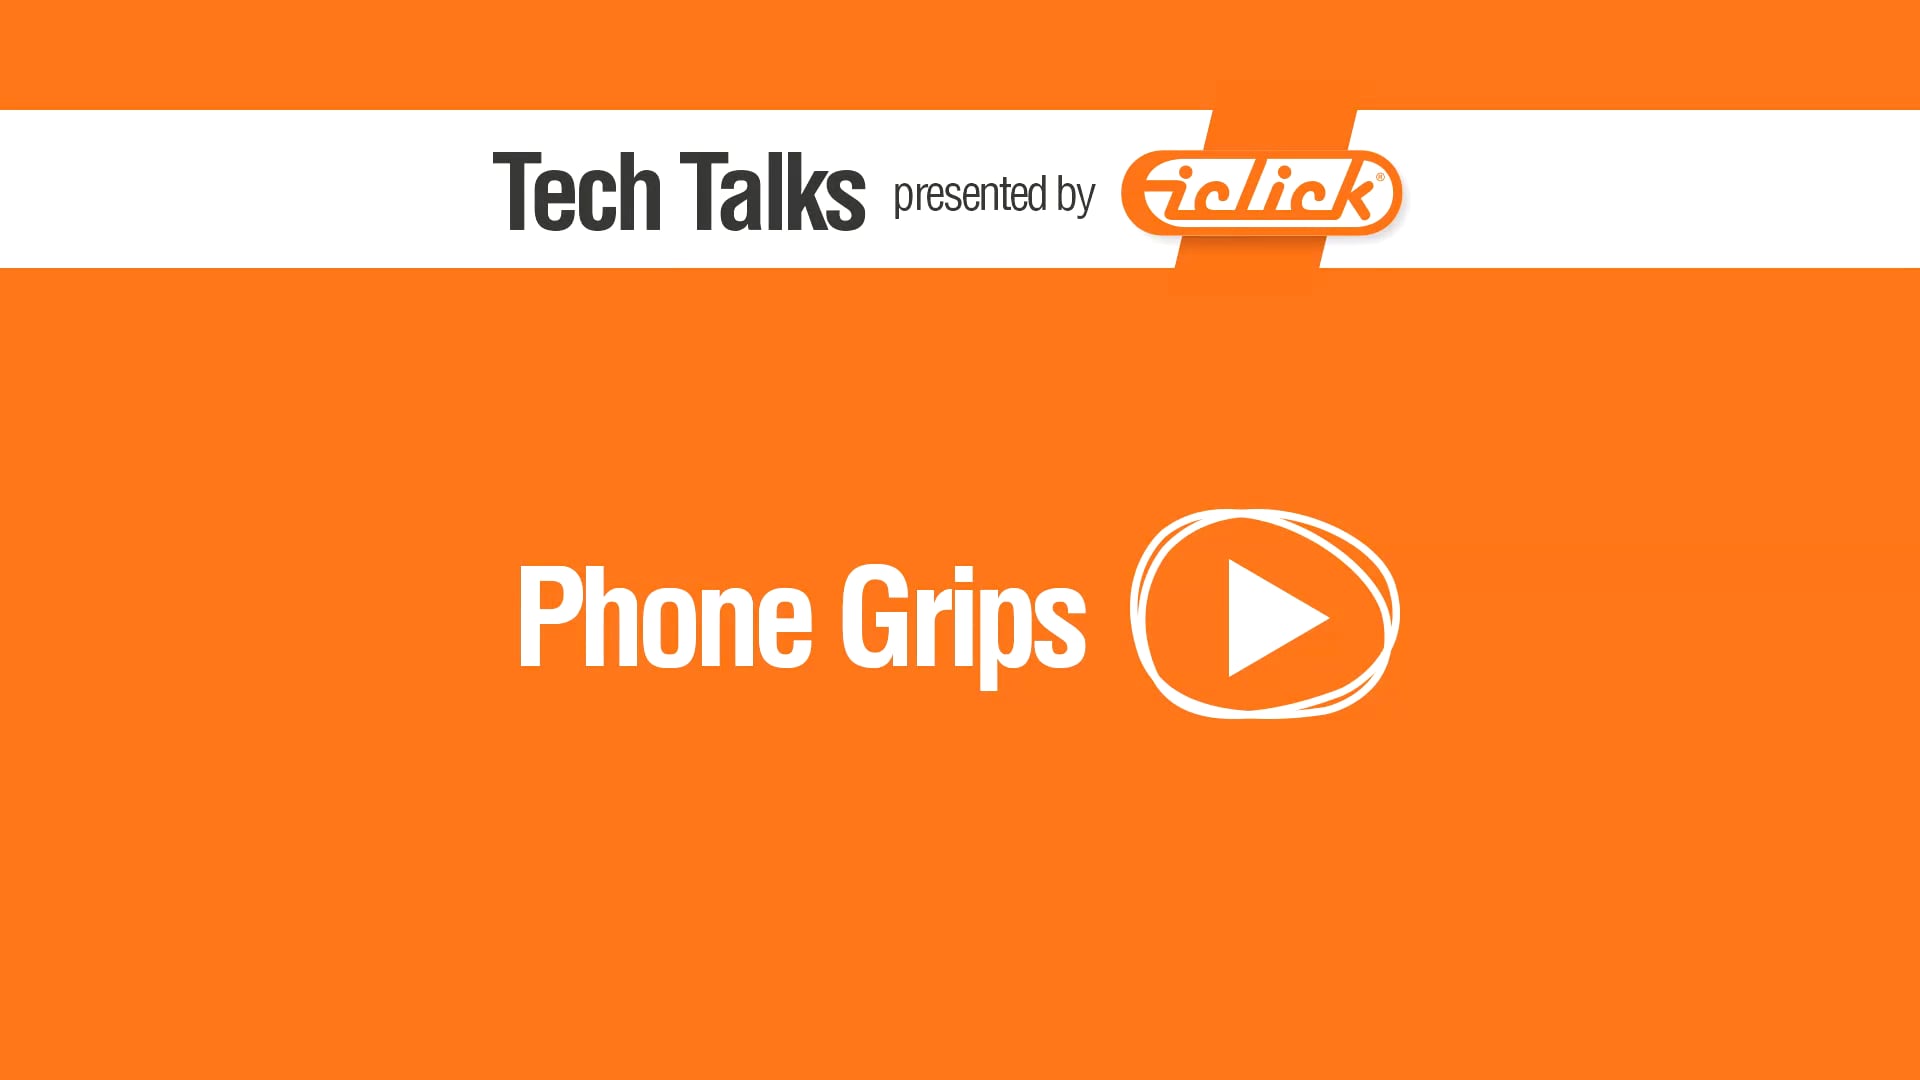 iClick: Tech Talks